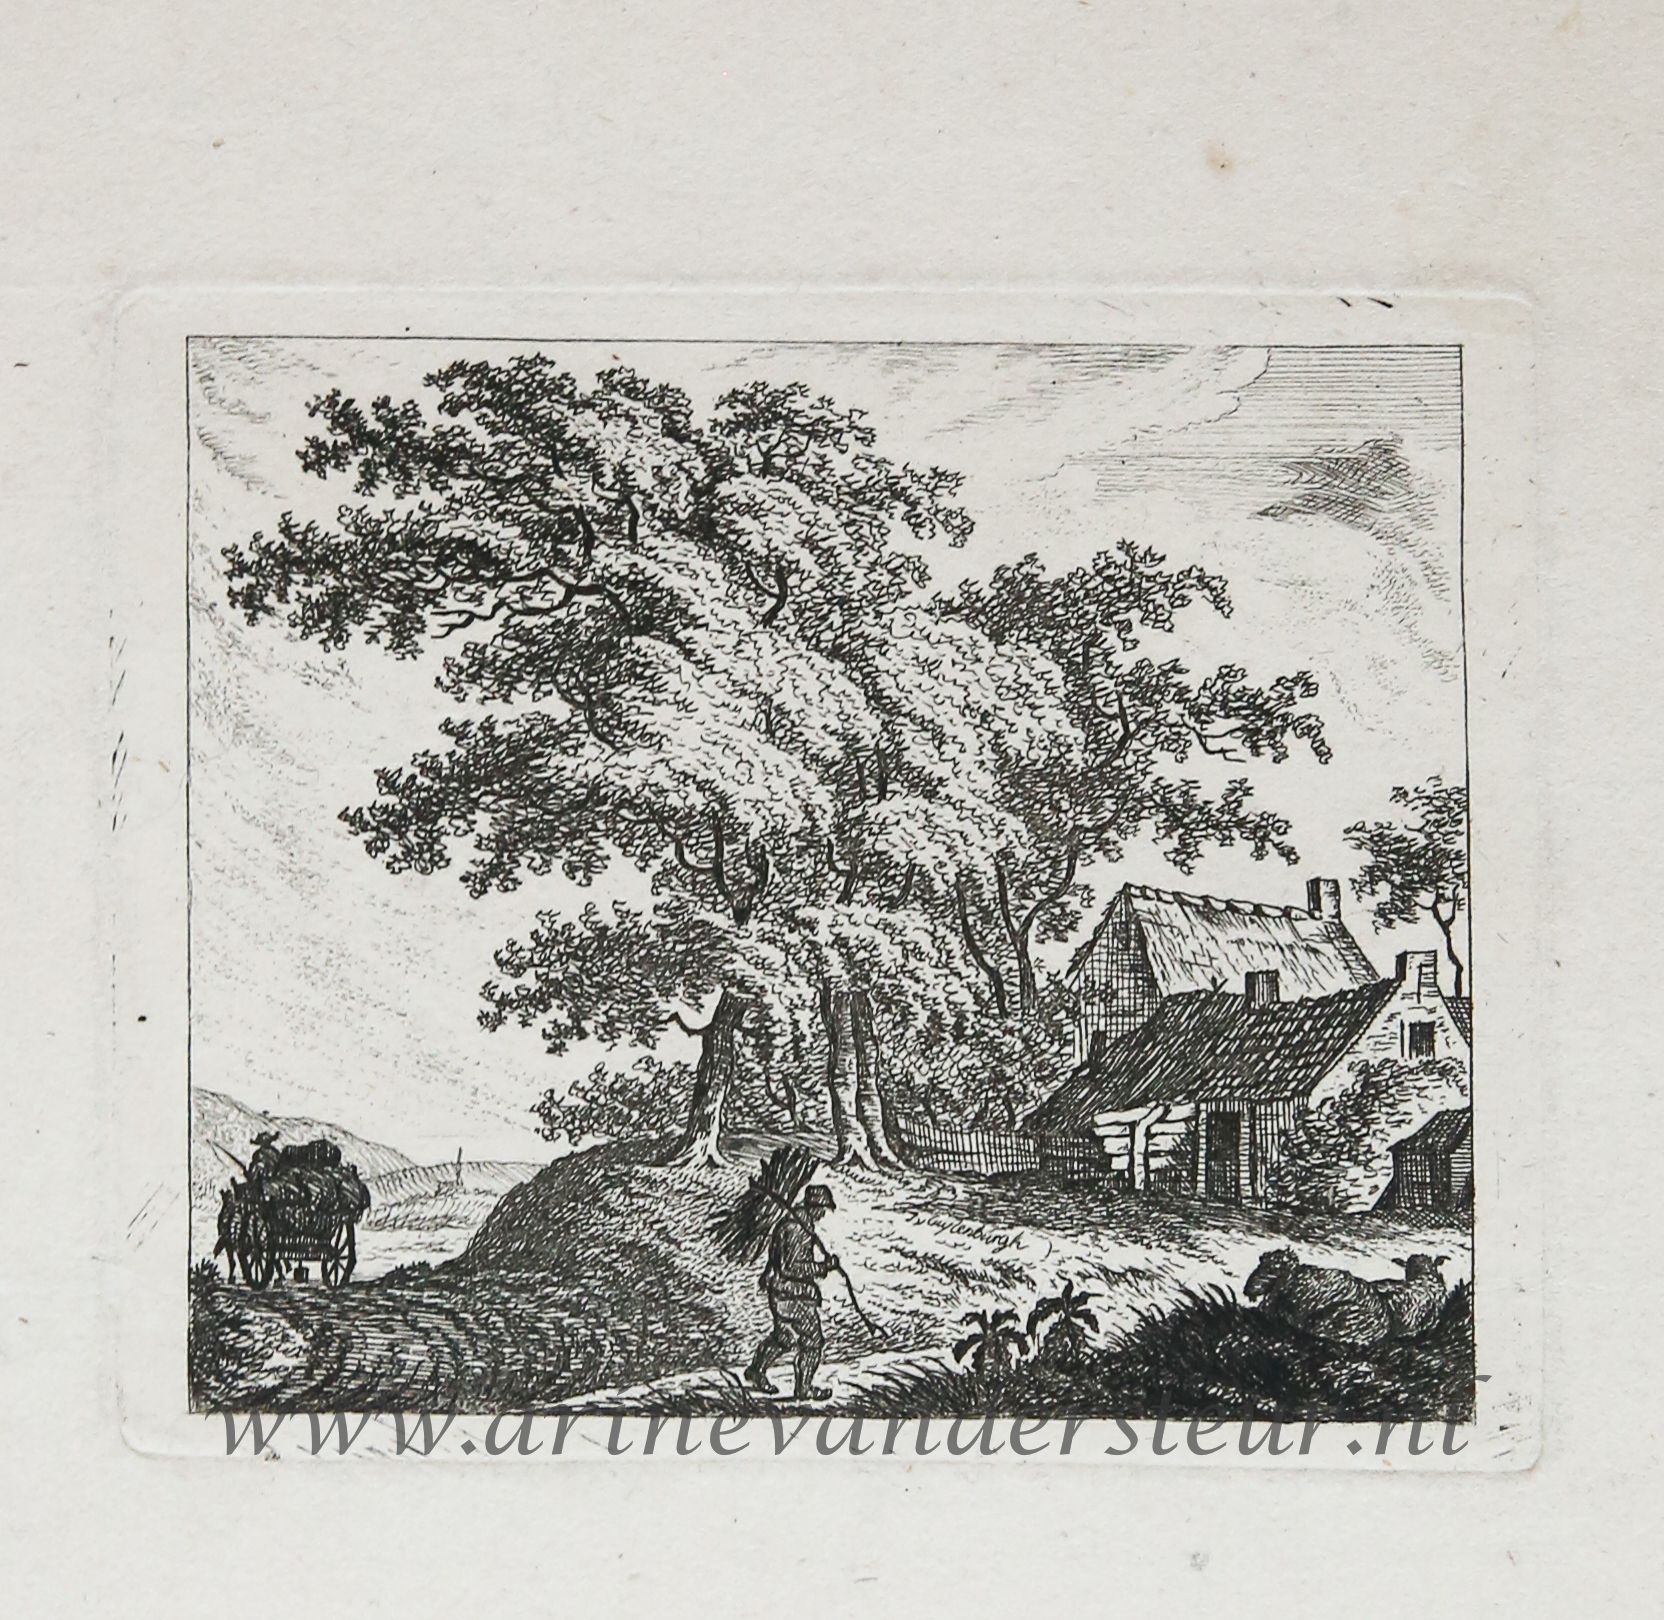 [Original etching, ets] J.E. v. Cuylenburgh. Landscape with wayfarer, published 1800-1850.